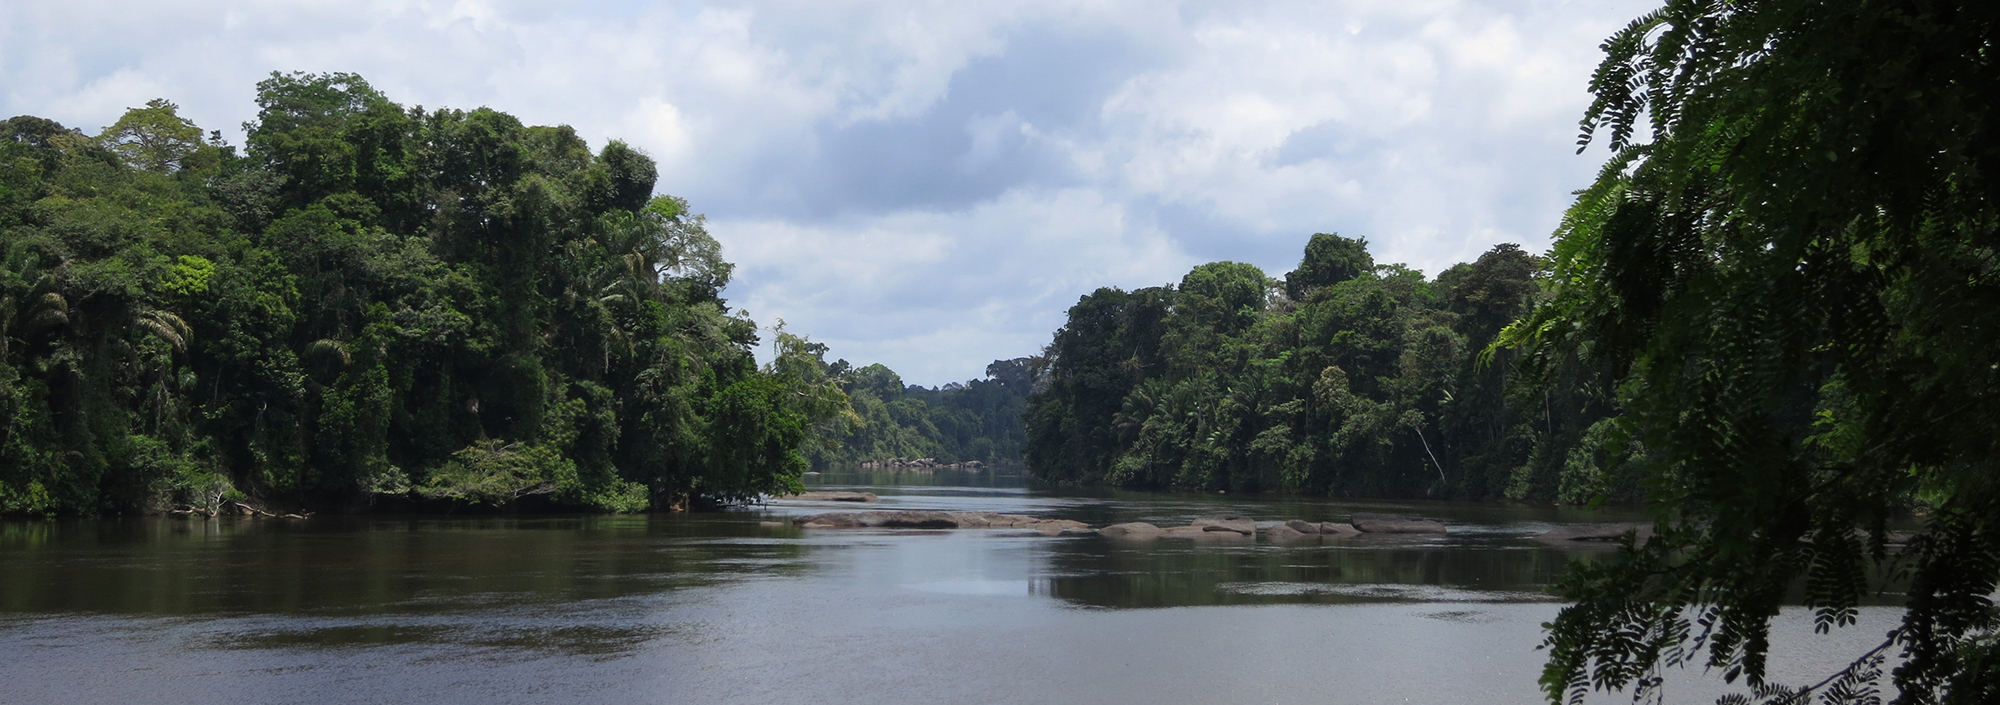 Am oberen Surinamefluss inmitten des Regenwalds von Suriname